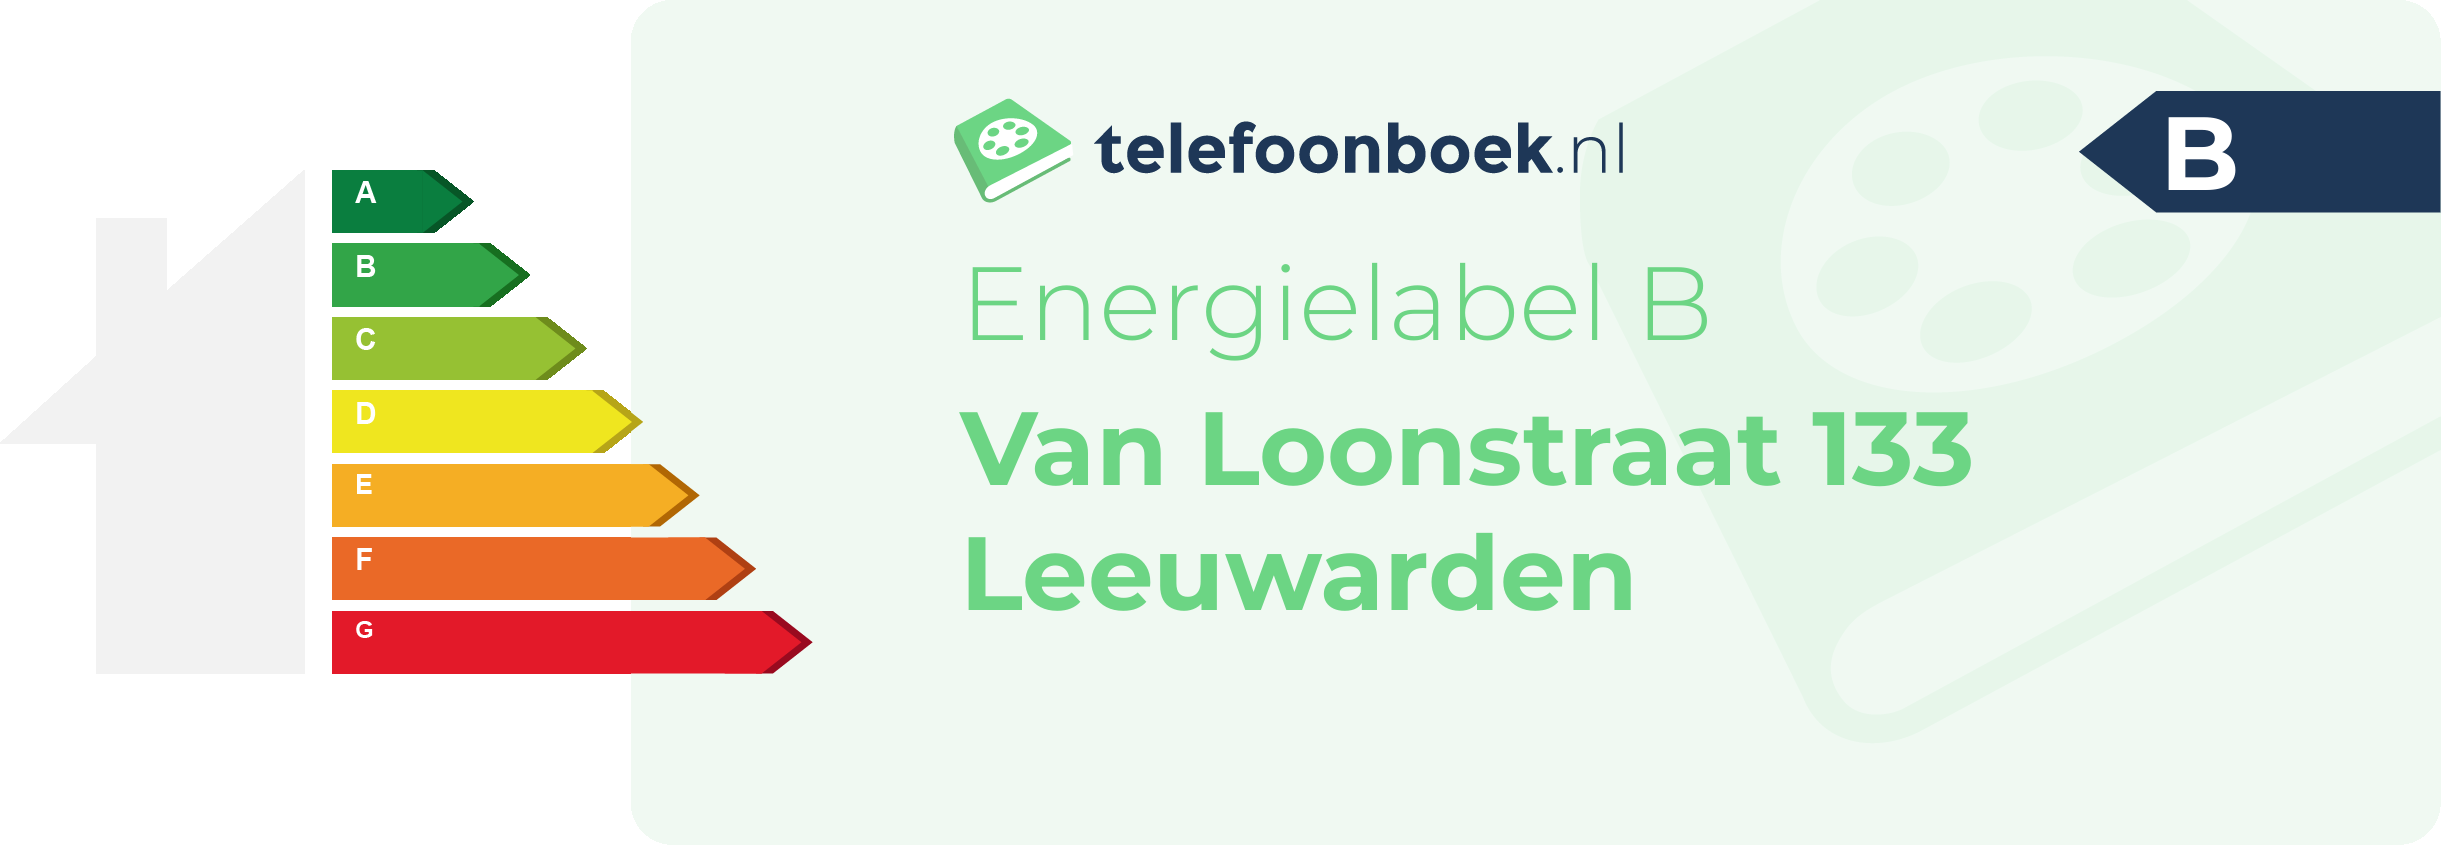 Energielabel Van Loonstraat 133 Leeuwarden